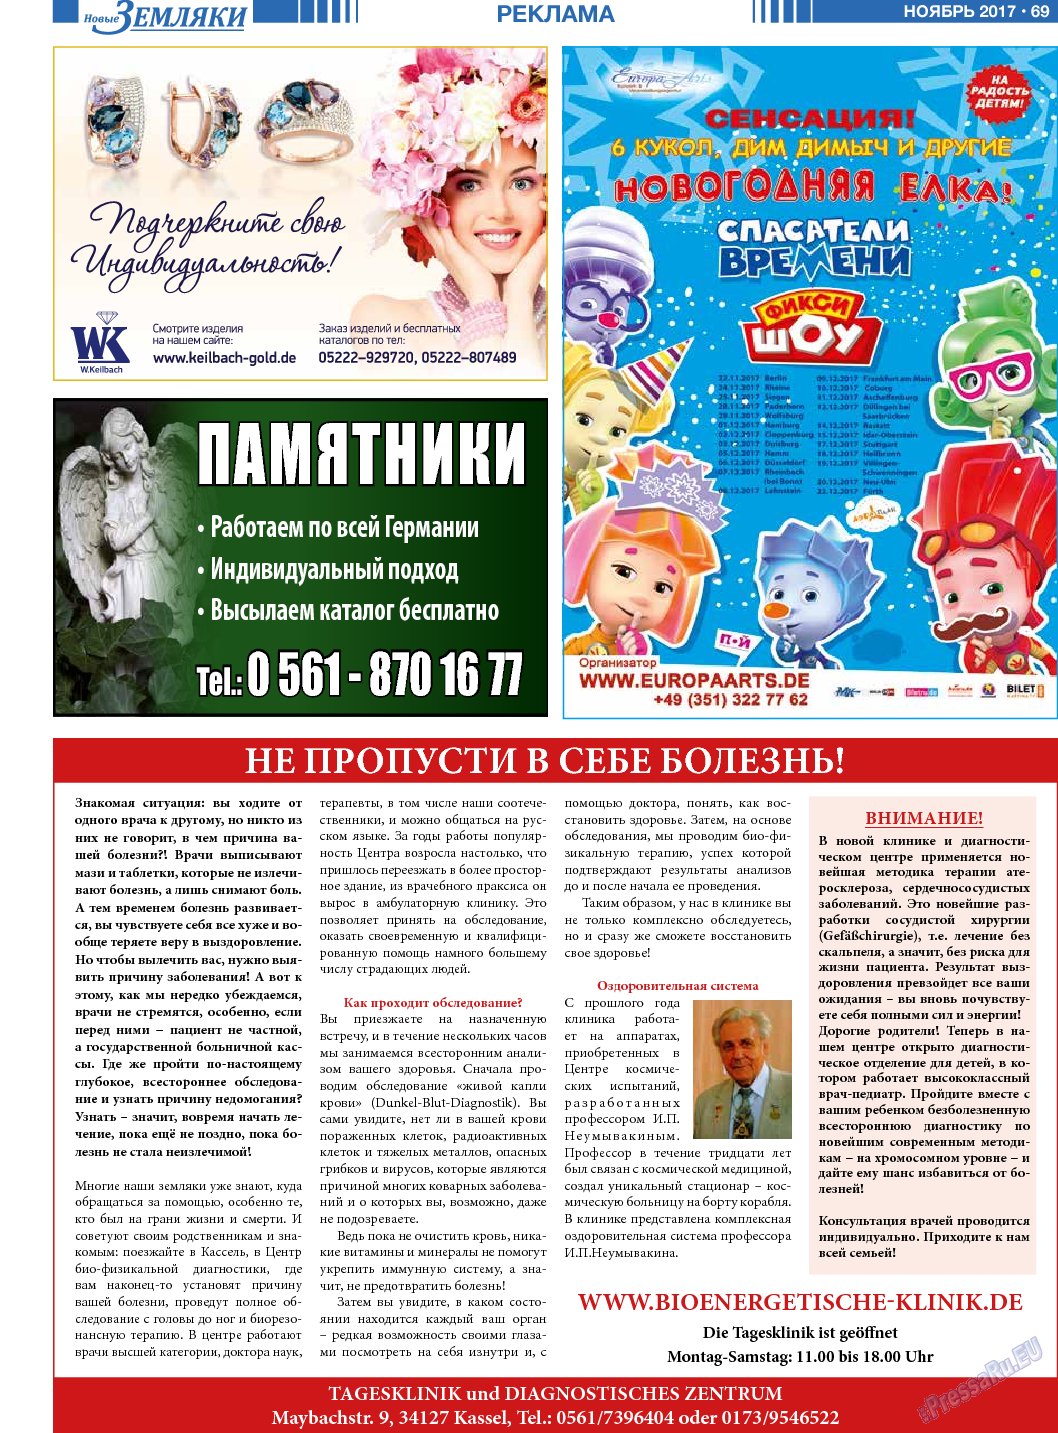 Новые Земляки, газета. 2017 №11 стр.69